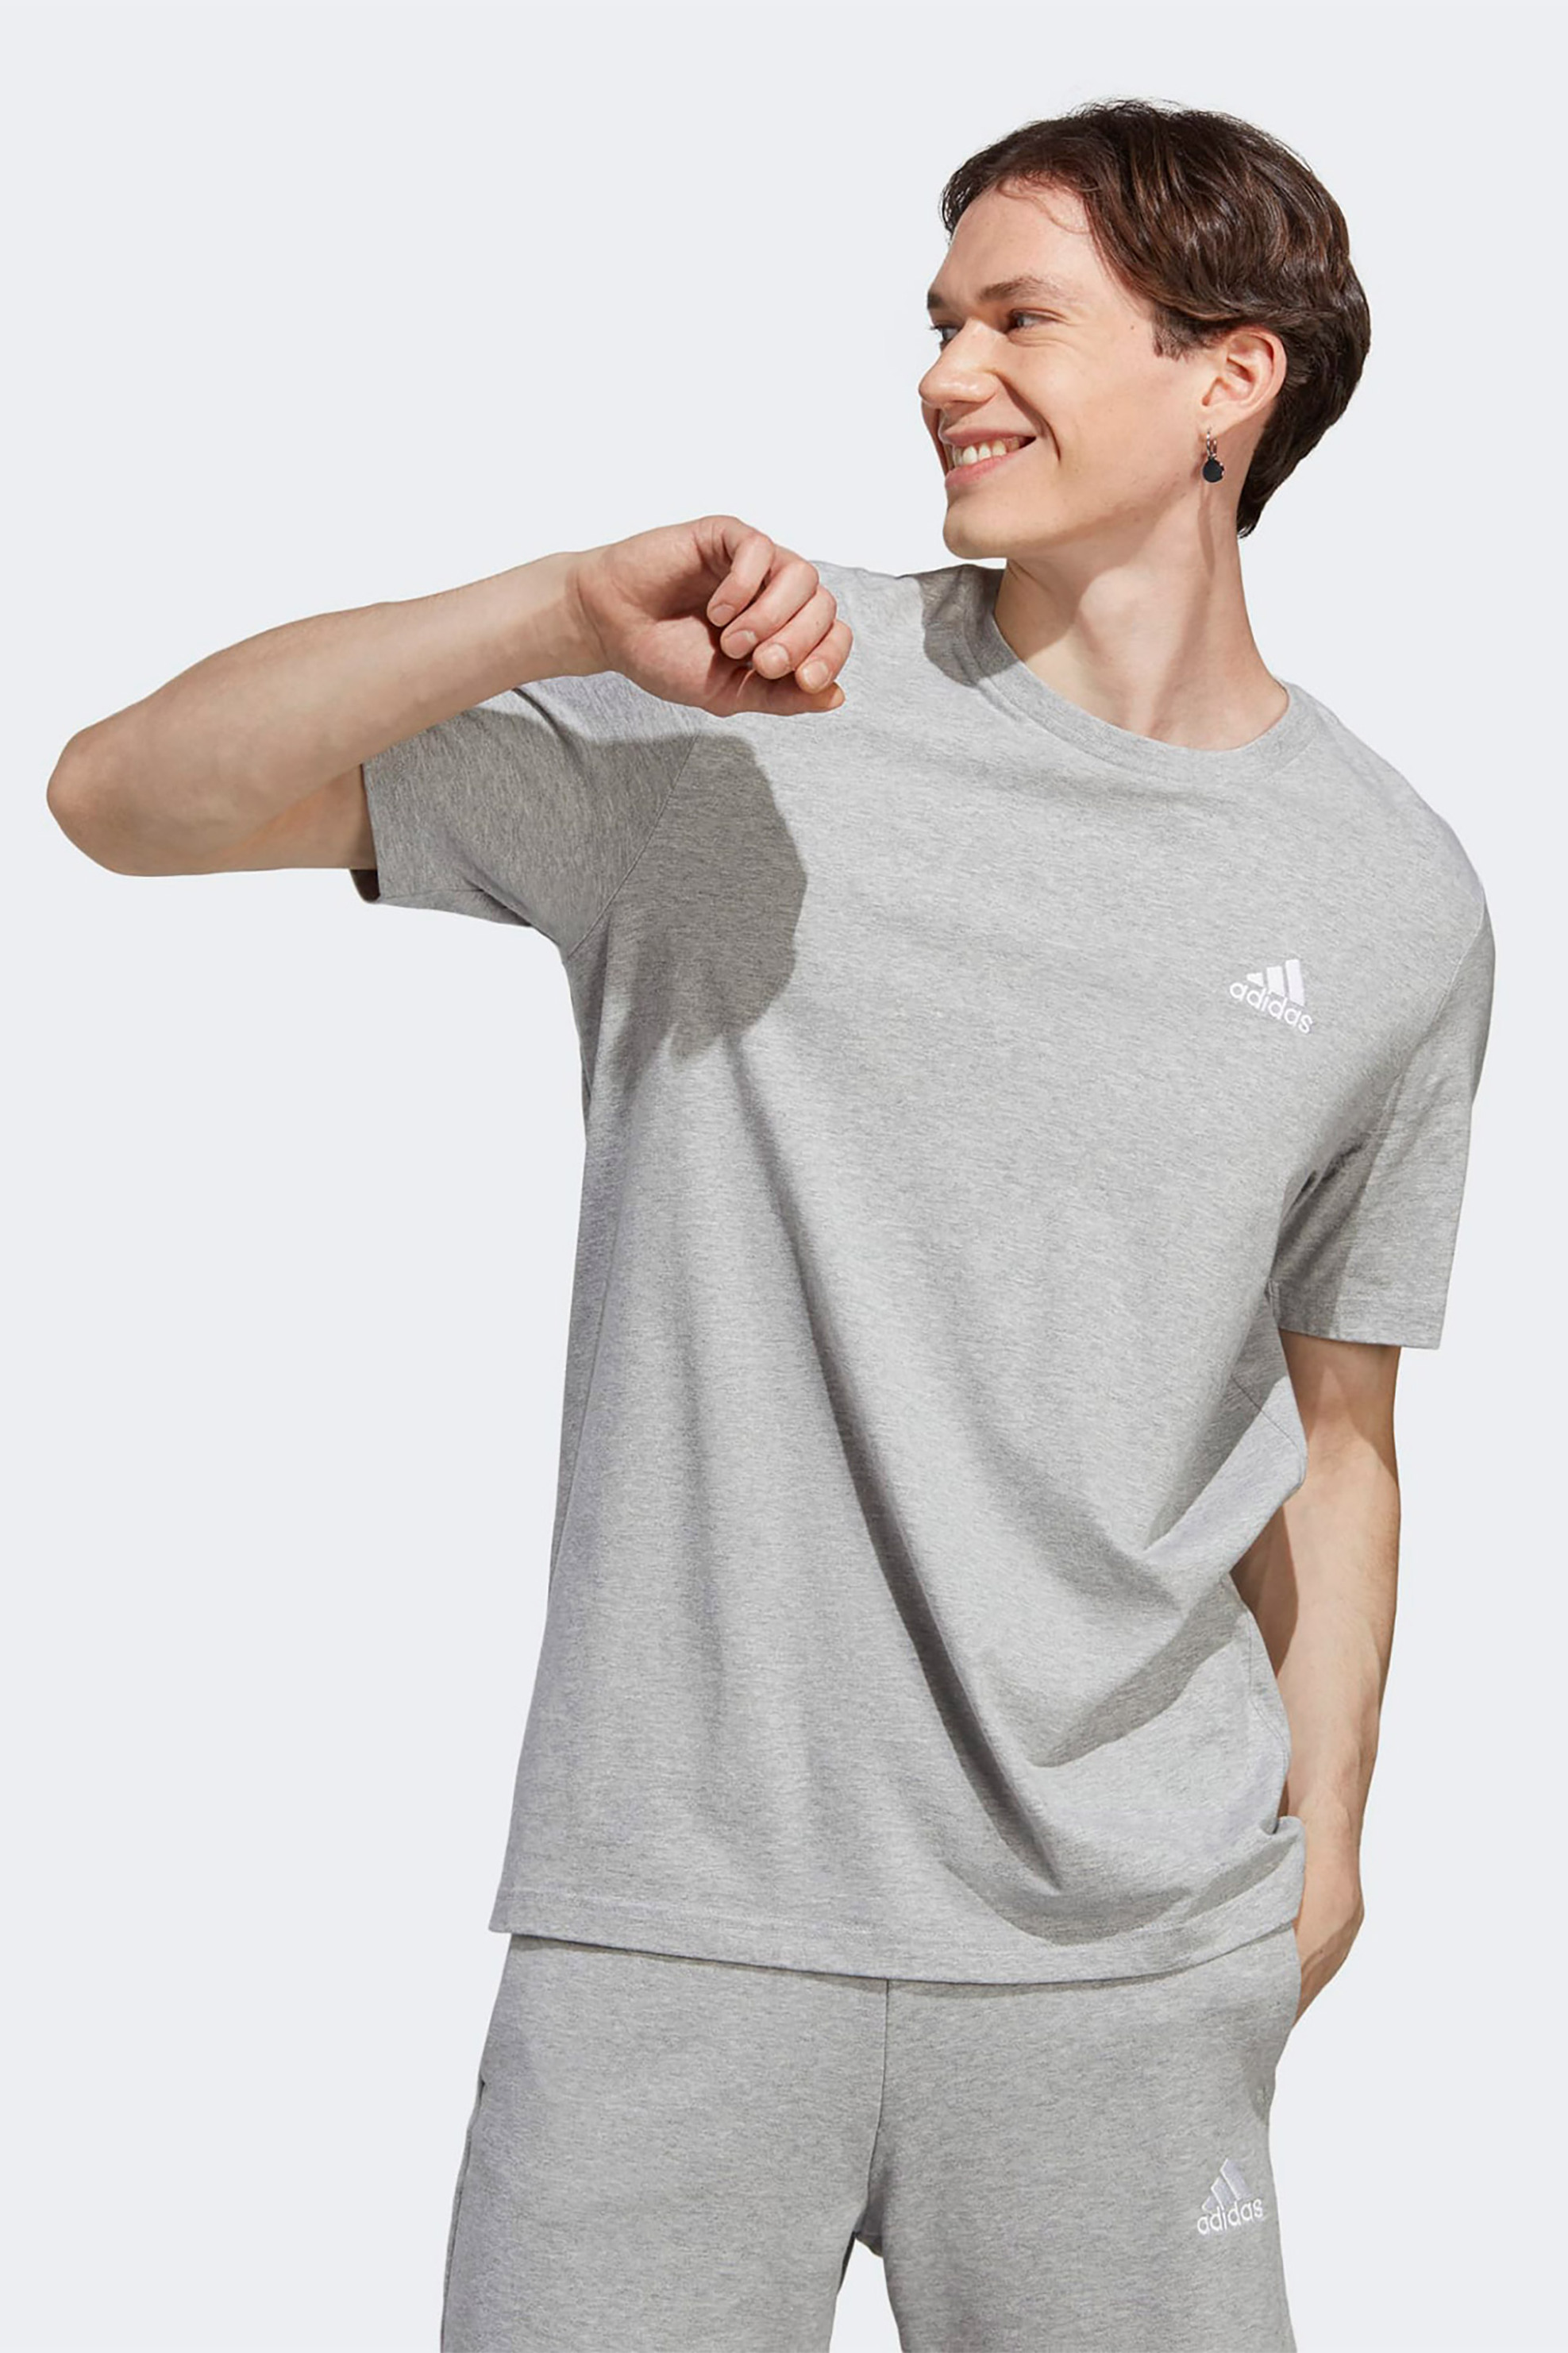 Ανδρική Μόδα > Ανδρικά Αθλητικά > Ανδρικά Αθλητικά Ρούχα > Αθλητικές Μπλούζες > Ανδρικά Αθλητικά T-Shirts Adidas ανδρικό αθλητικό T-shirt μονόχρωμο με κεντημένο contrast λογότυπο "M SL SJ T" - IC9288 Γκρι